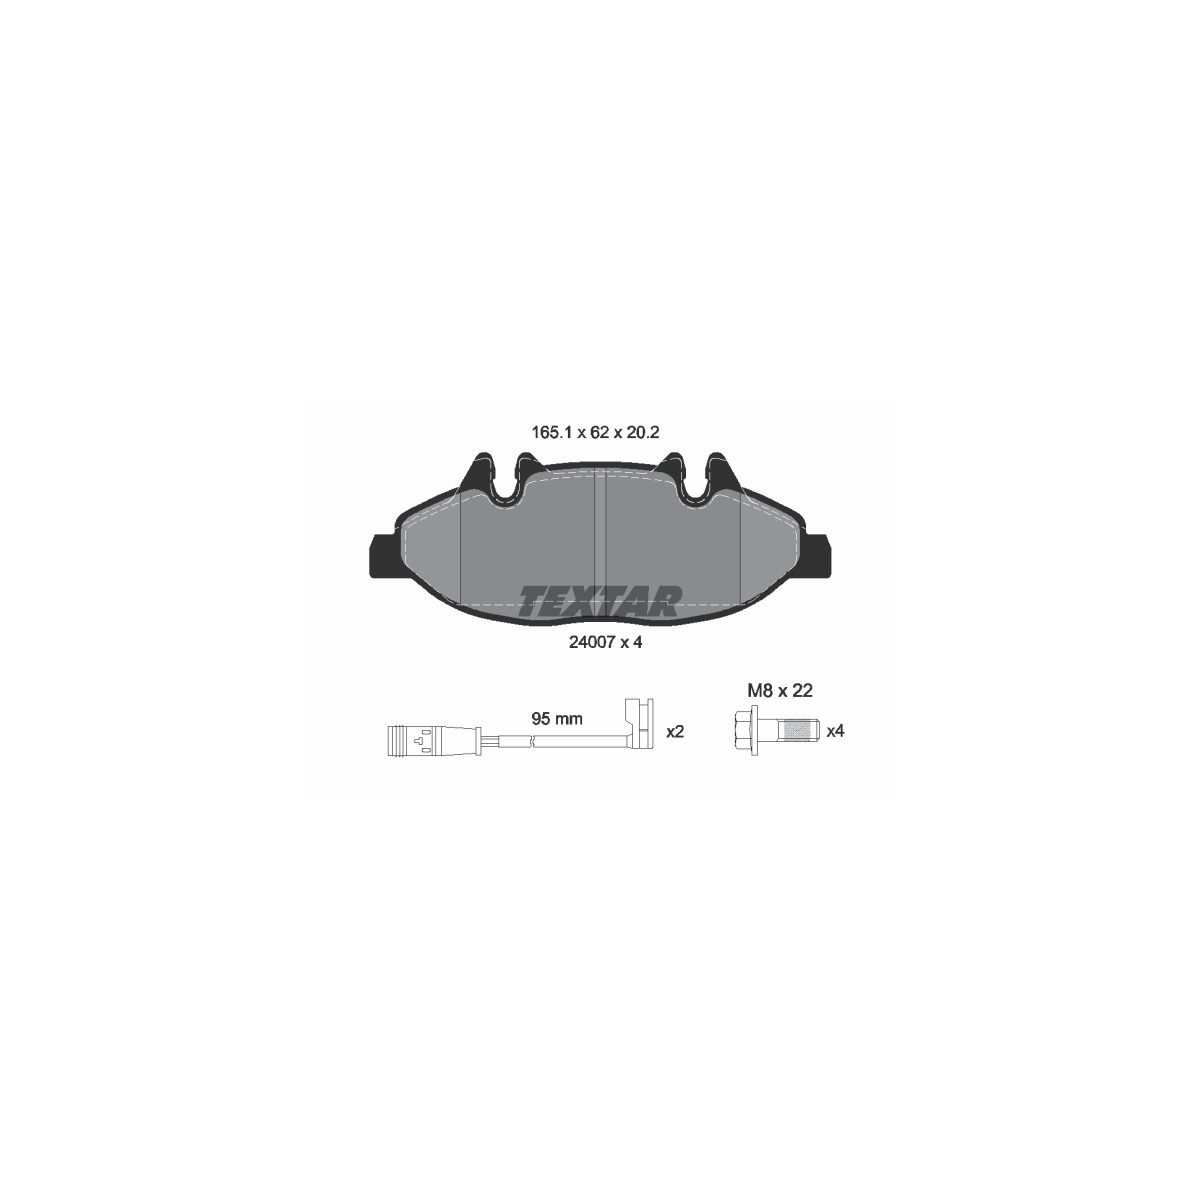 TEXTAR Bremsscheiben + Beläge + Sensor MERCEDES Viano Vito / Mixto W639 bis 06.2012 vorne